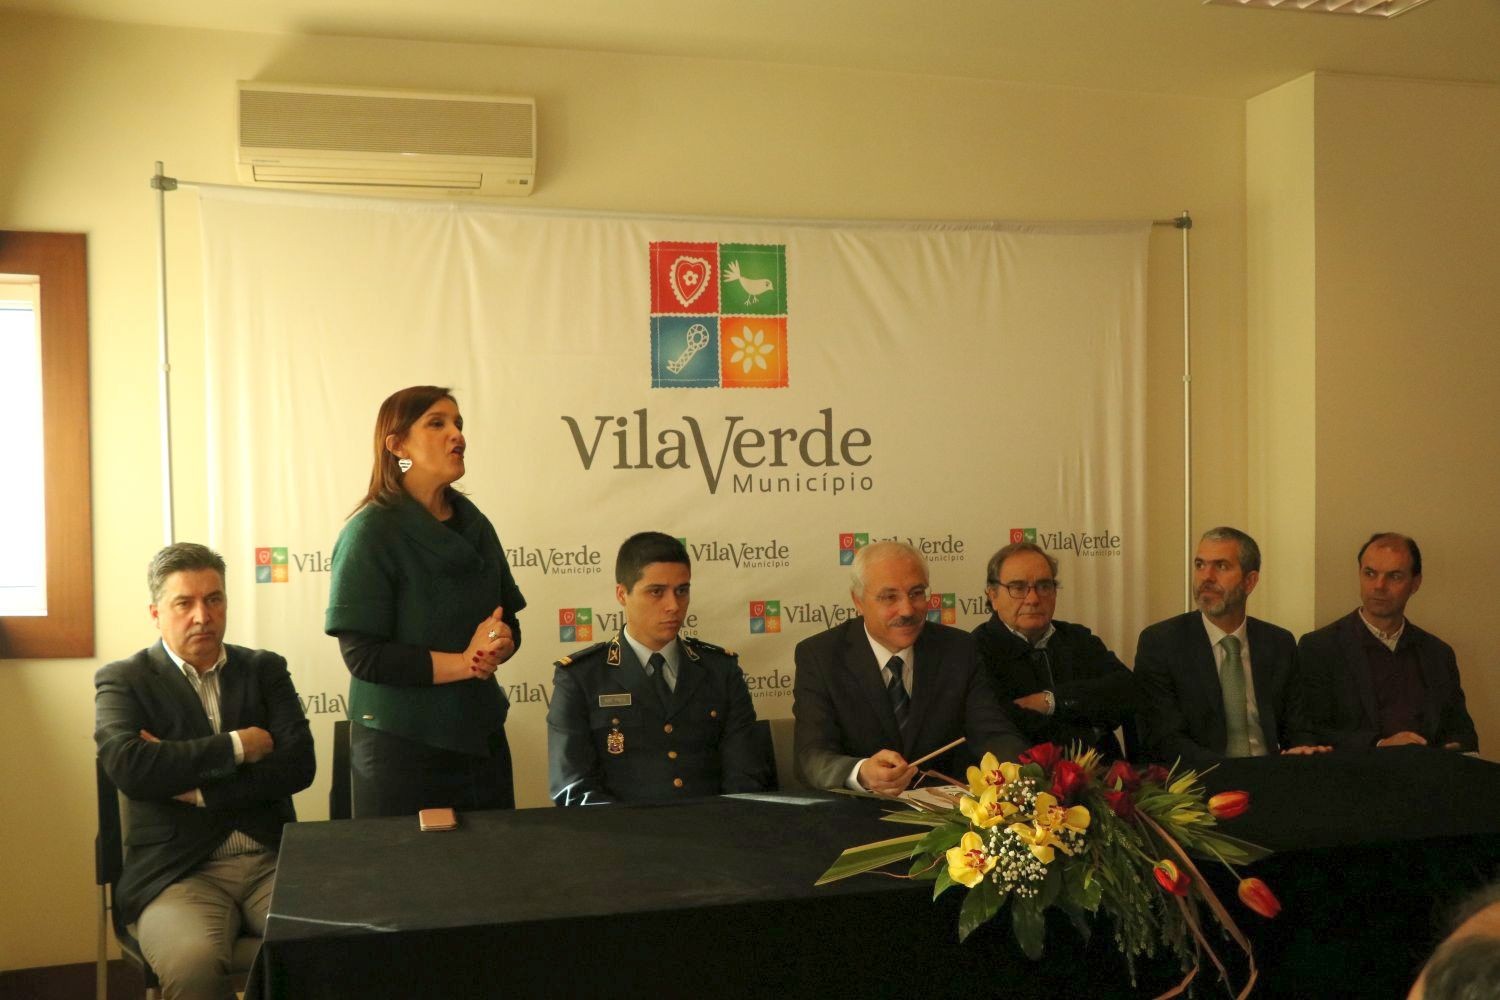 Vila Verde combate isolamento dos idosos com novas tecnologias